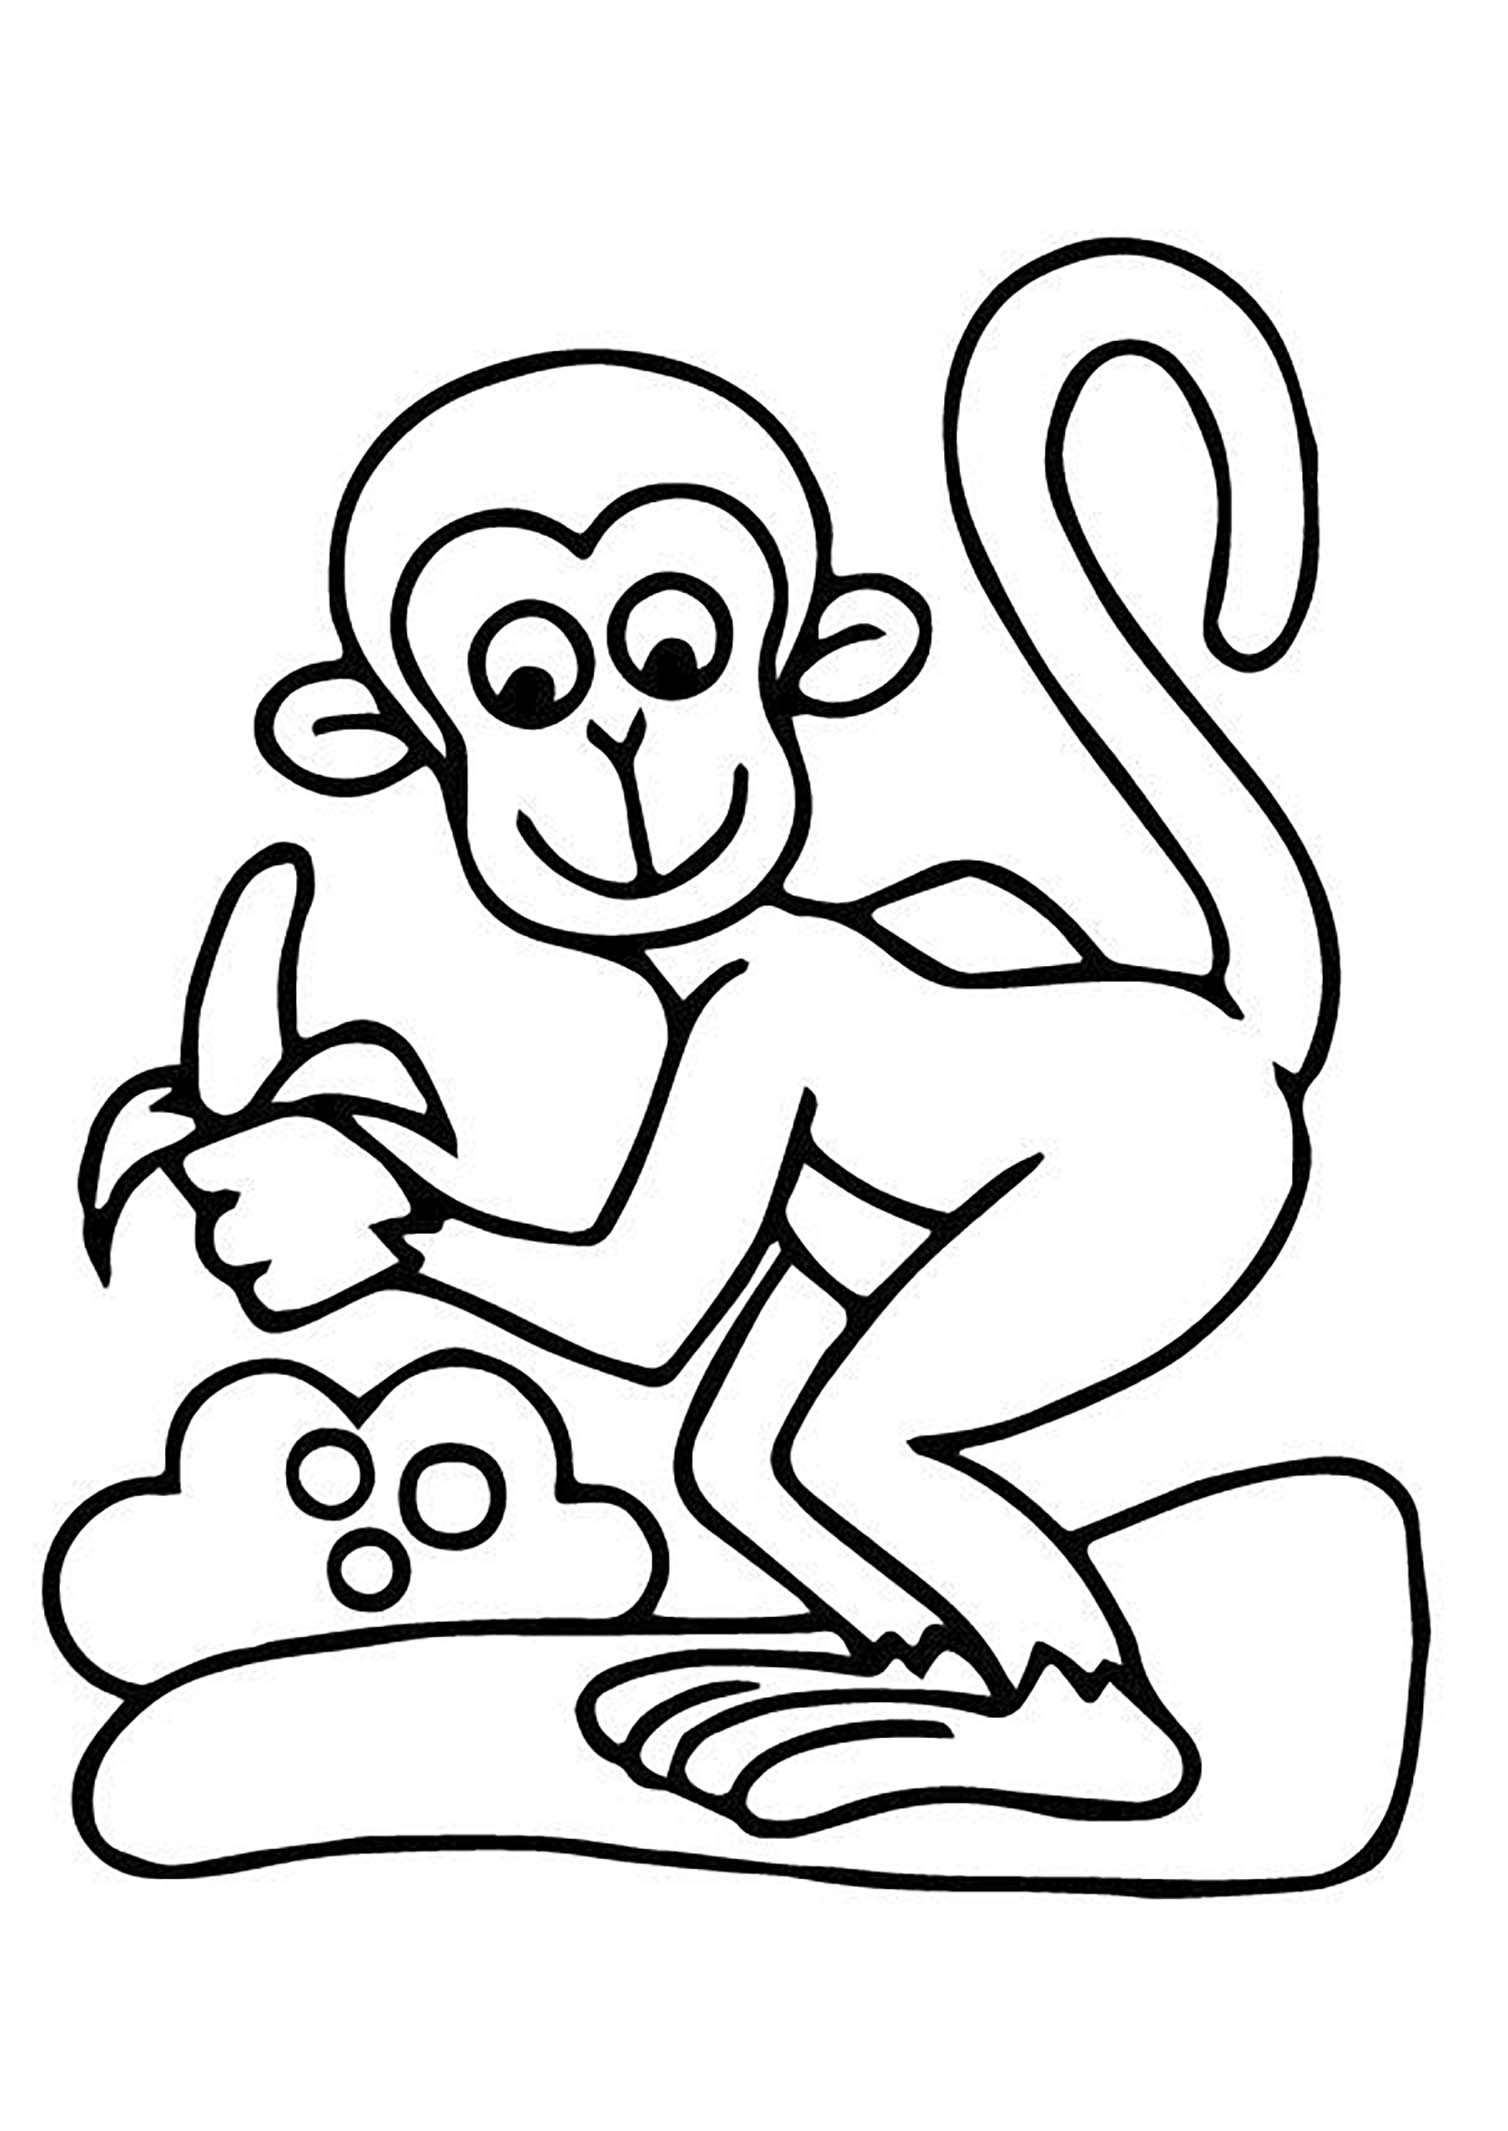 Definir administración comportarse Dibujos para colorear de Monos para niños - Monos - Just Color Niños :  Dibujos para colorear para niños